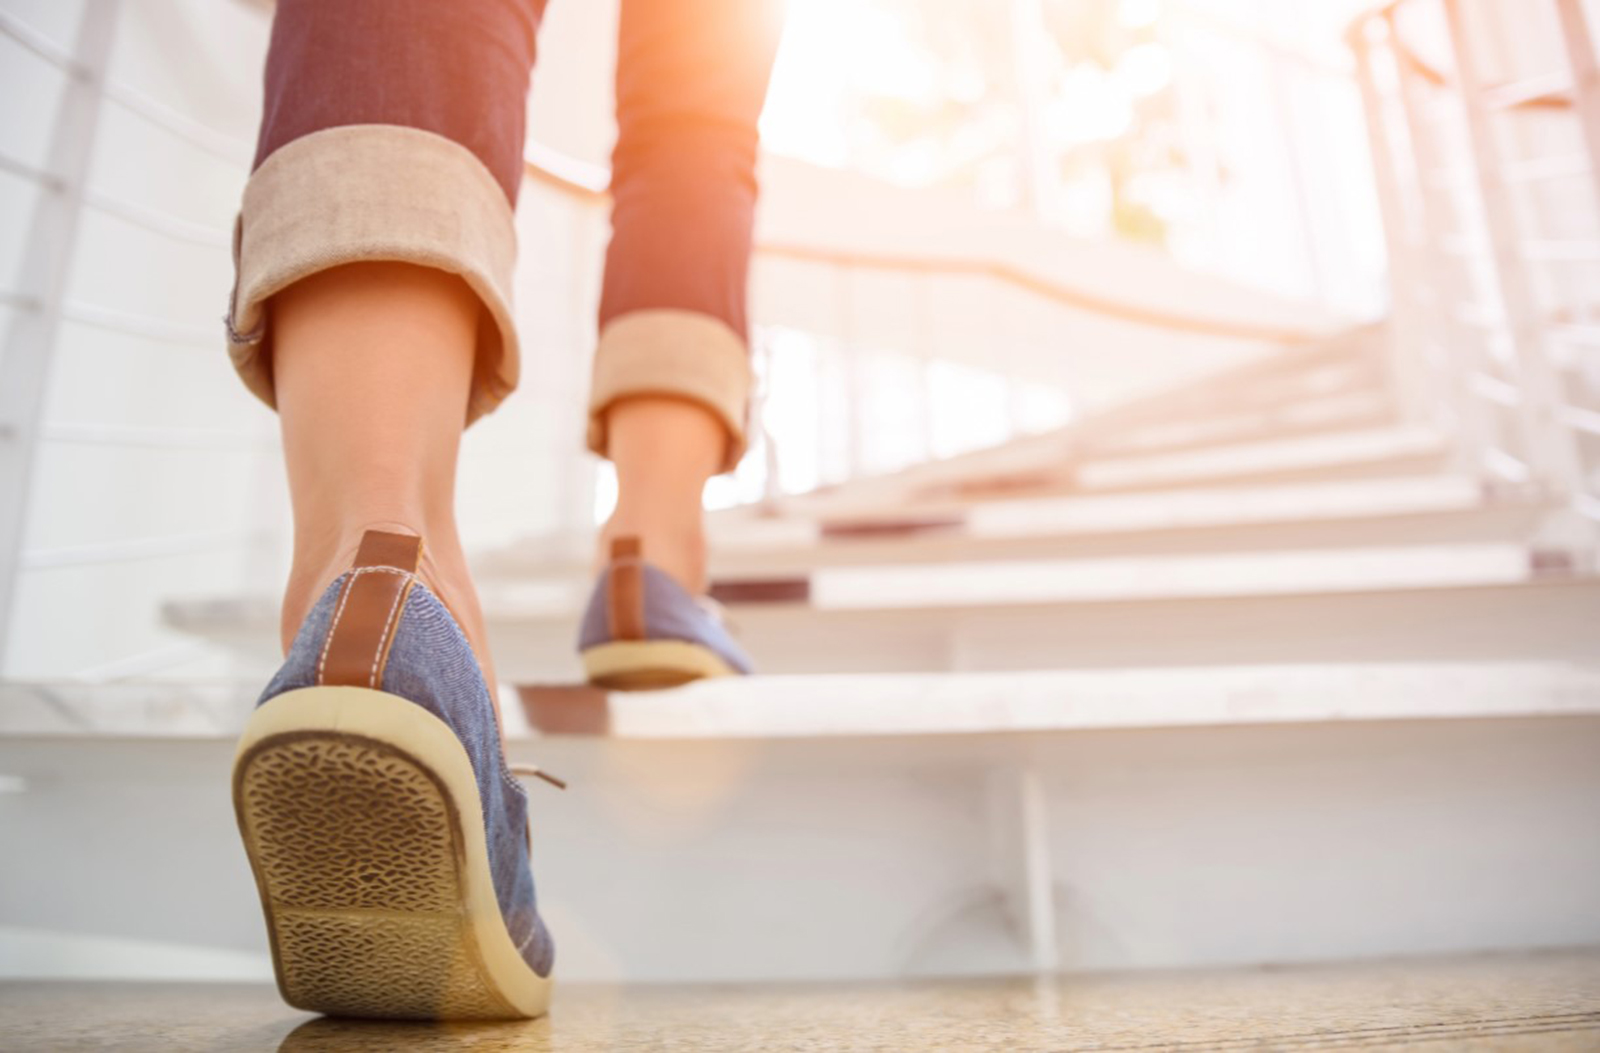 فوائد صحية مذهلة لصعود الدرج: دراسة جديدة تكشف الحقائق المدهشة